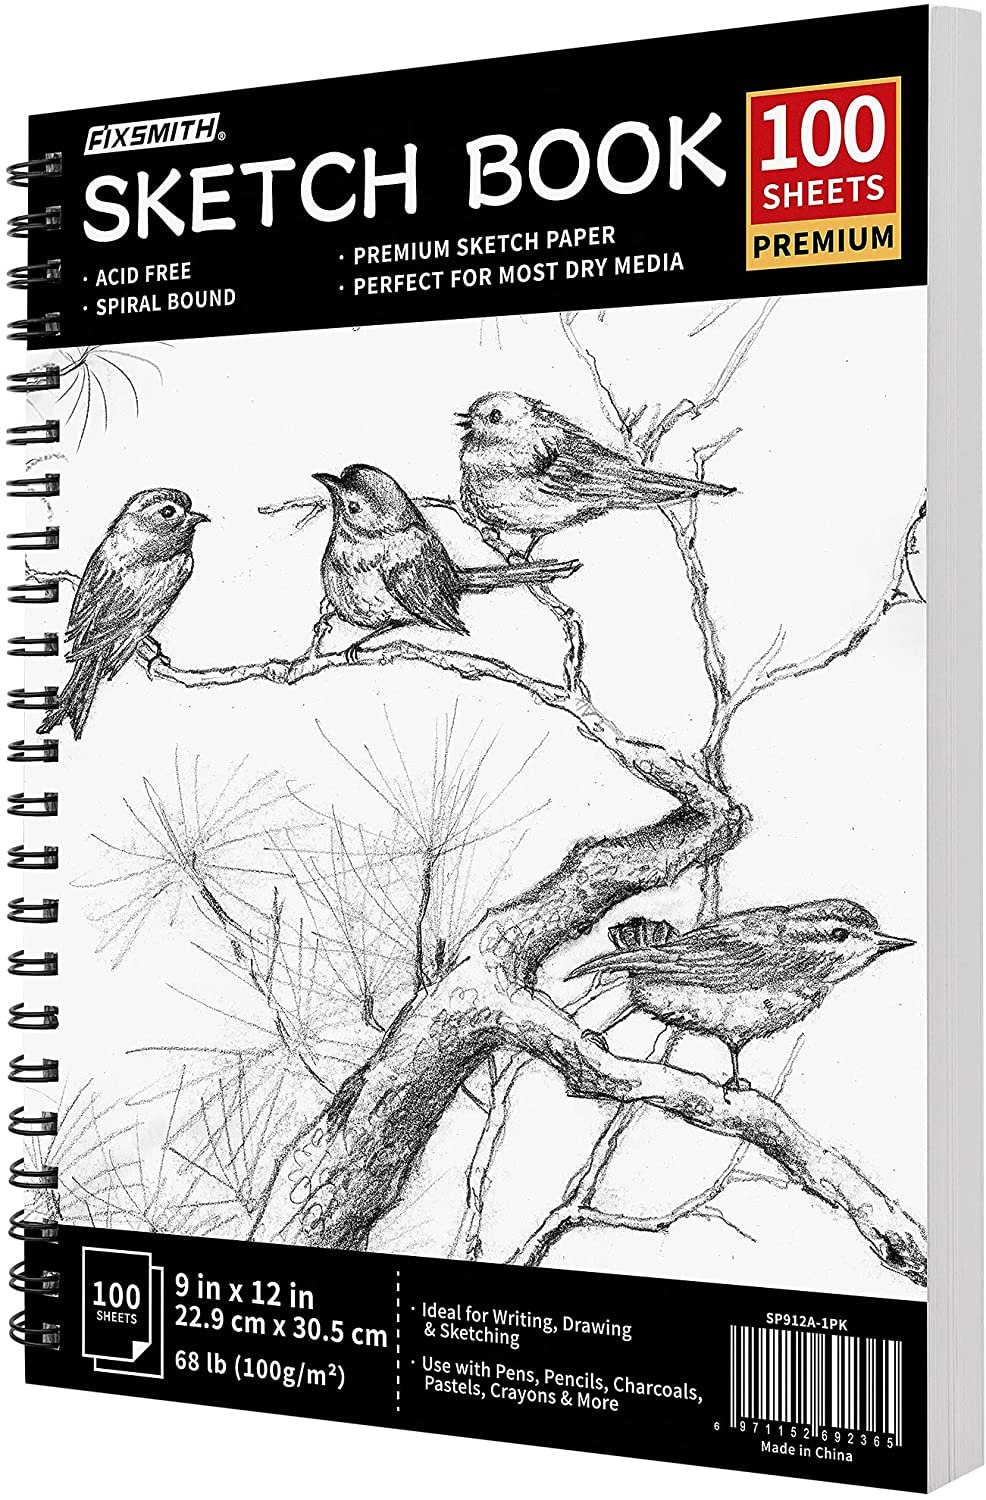 H & B Sketch Book 9X12, Drawing Pad 100-Sheets, Sketching Book